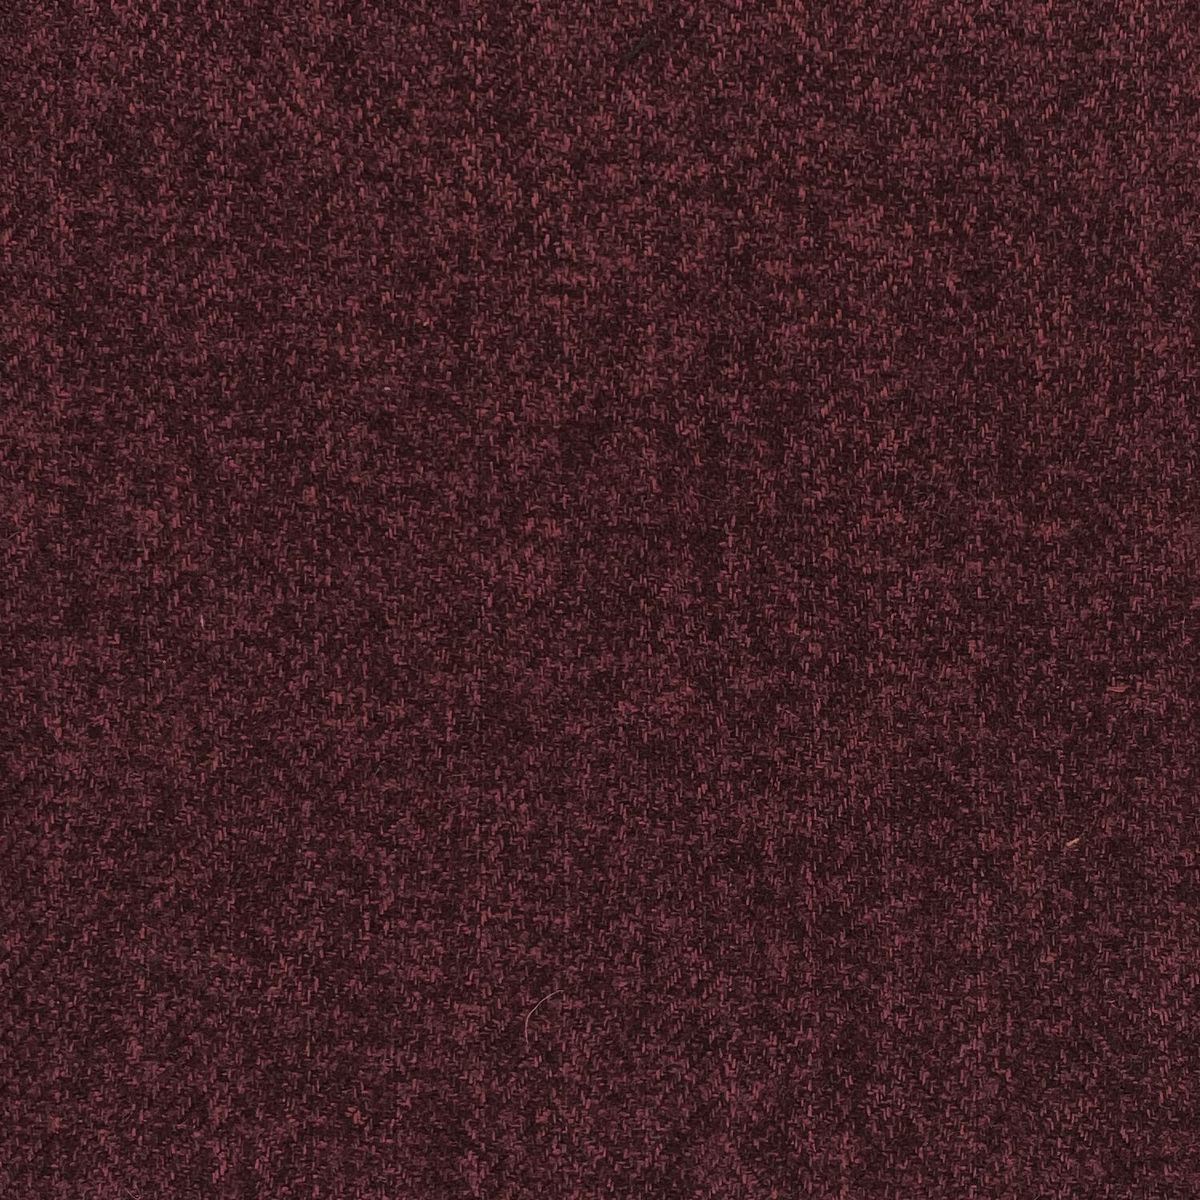 Tweed Bordeaux Fabric by Chatham Glyn